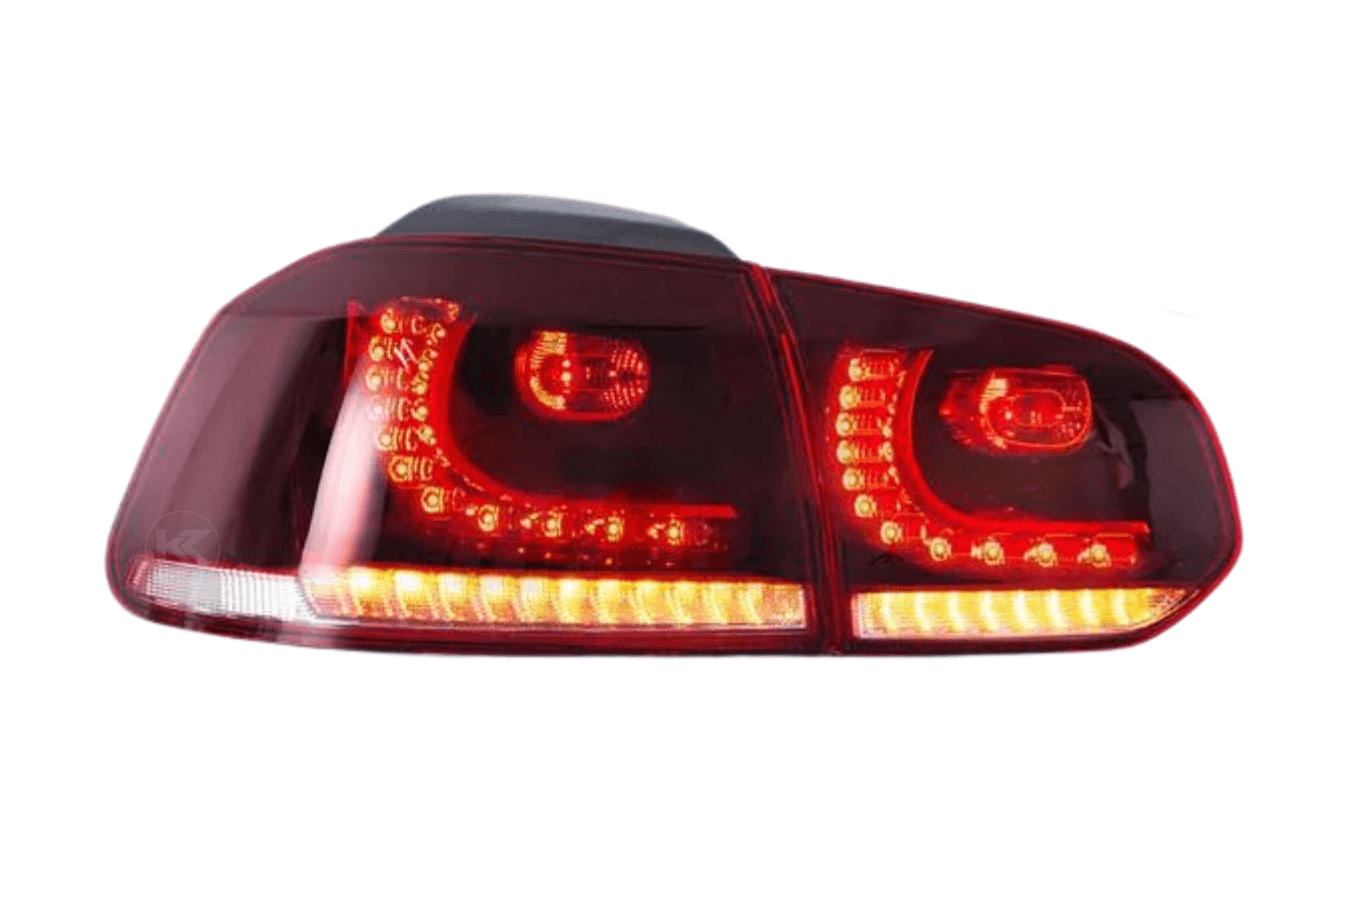 VW Golf 6th Gen Mk6 Hatchback LED Tail Lights (2008 - 2014) - K2 Industries